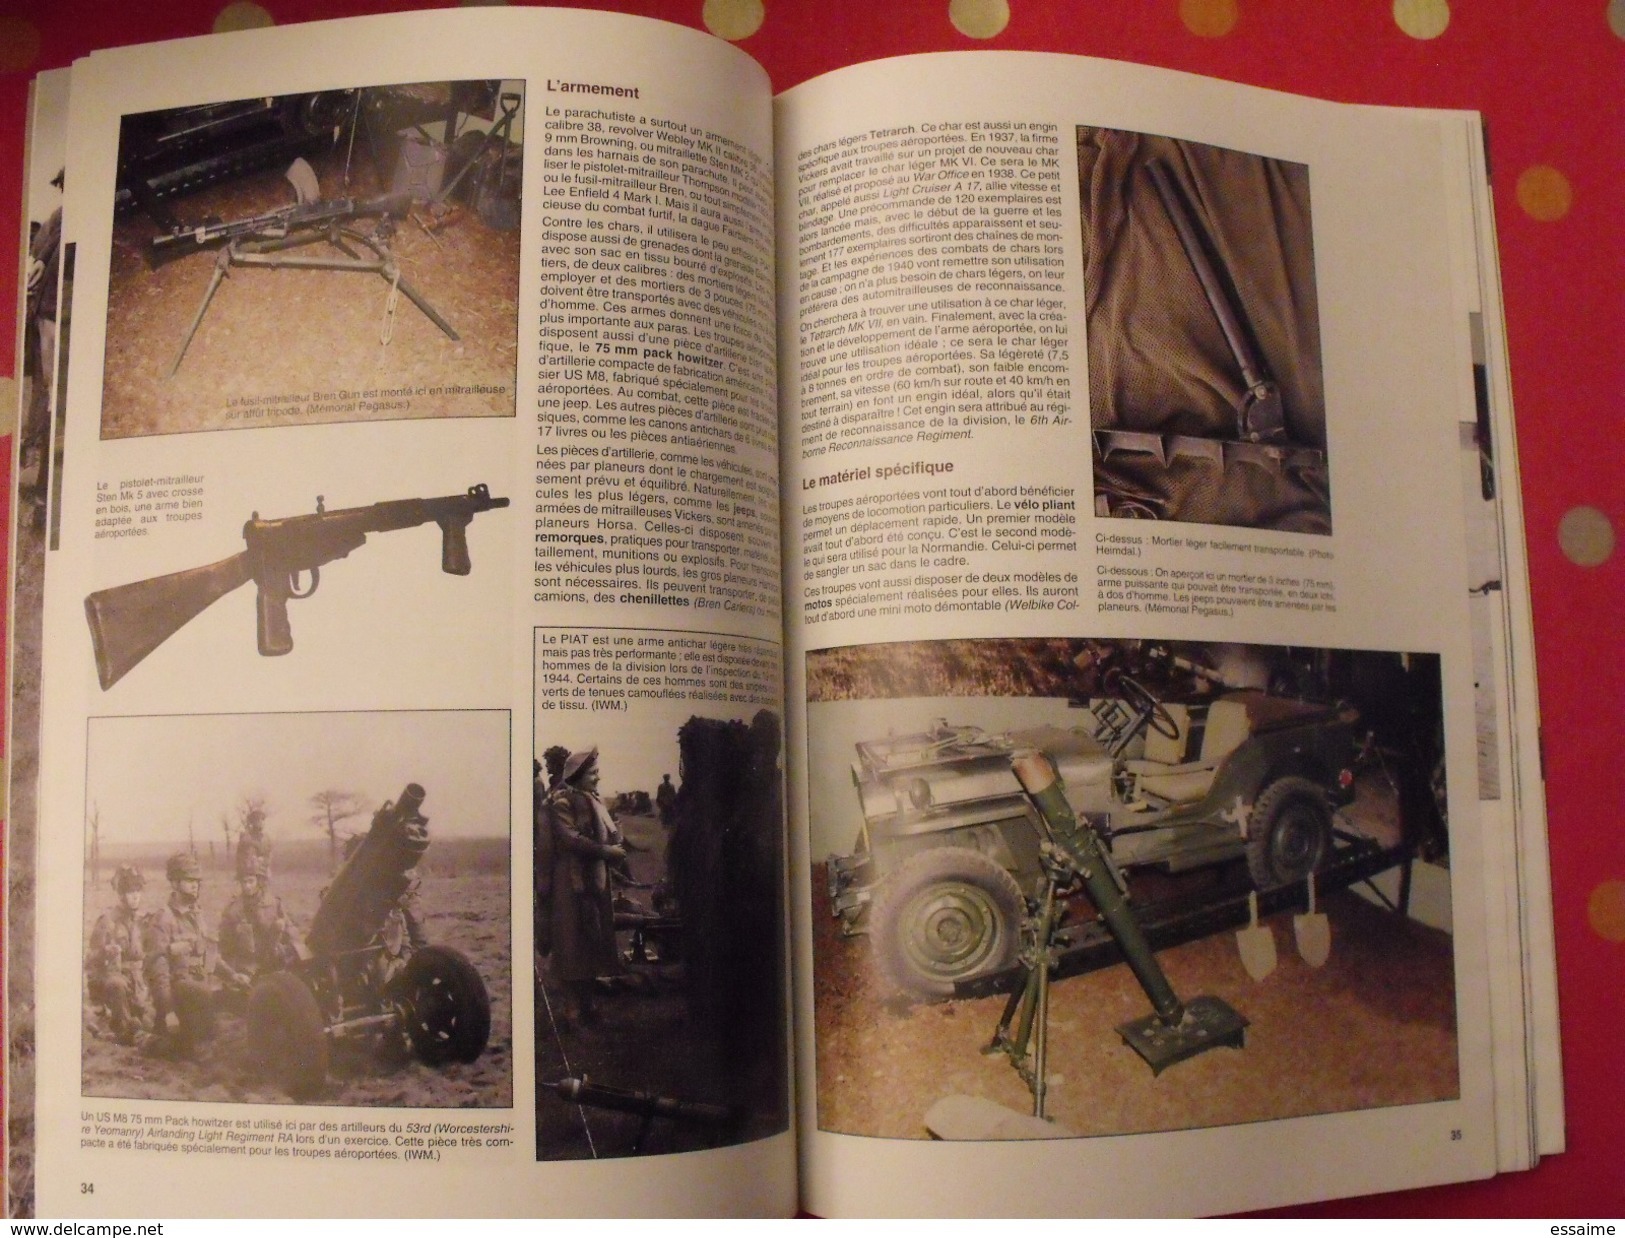 39-45 magazine hors série Historica n° 28 de 2002. Normandie la nuit des paras Major Howard 6 juin 1944